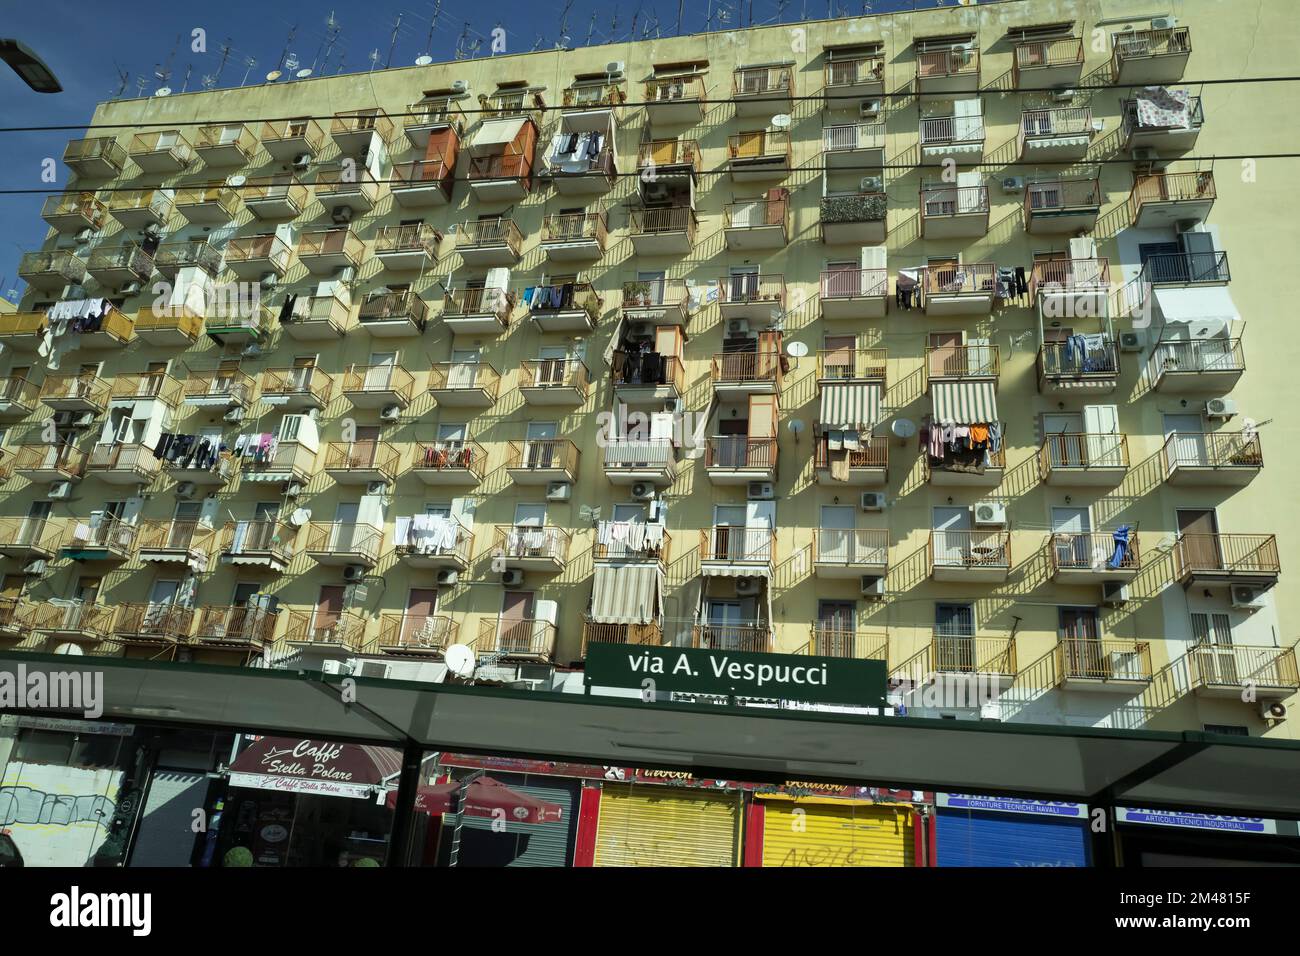 Neapel-Italien - Ca. März 2022. Typisches Bild eines Apartmentgebäudes an der Neapolitan Av. Vespucci Avenue mit hübschen Aussichtspunkten, die vom Balkon hängen Stockfoto